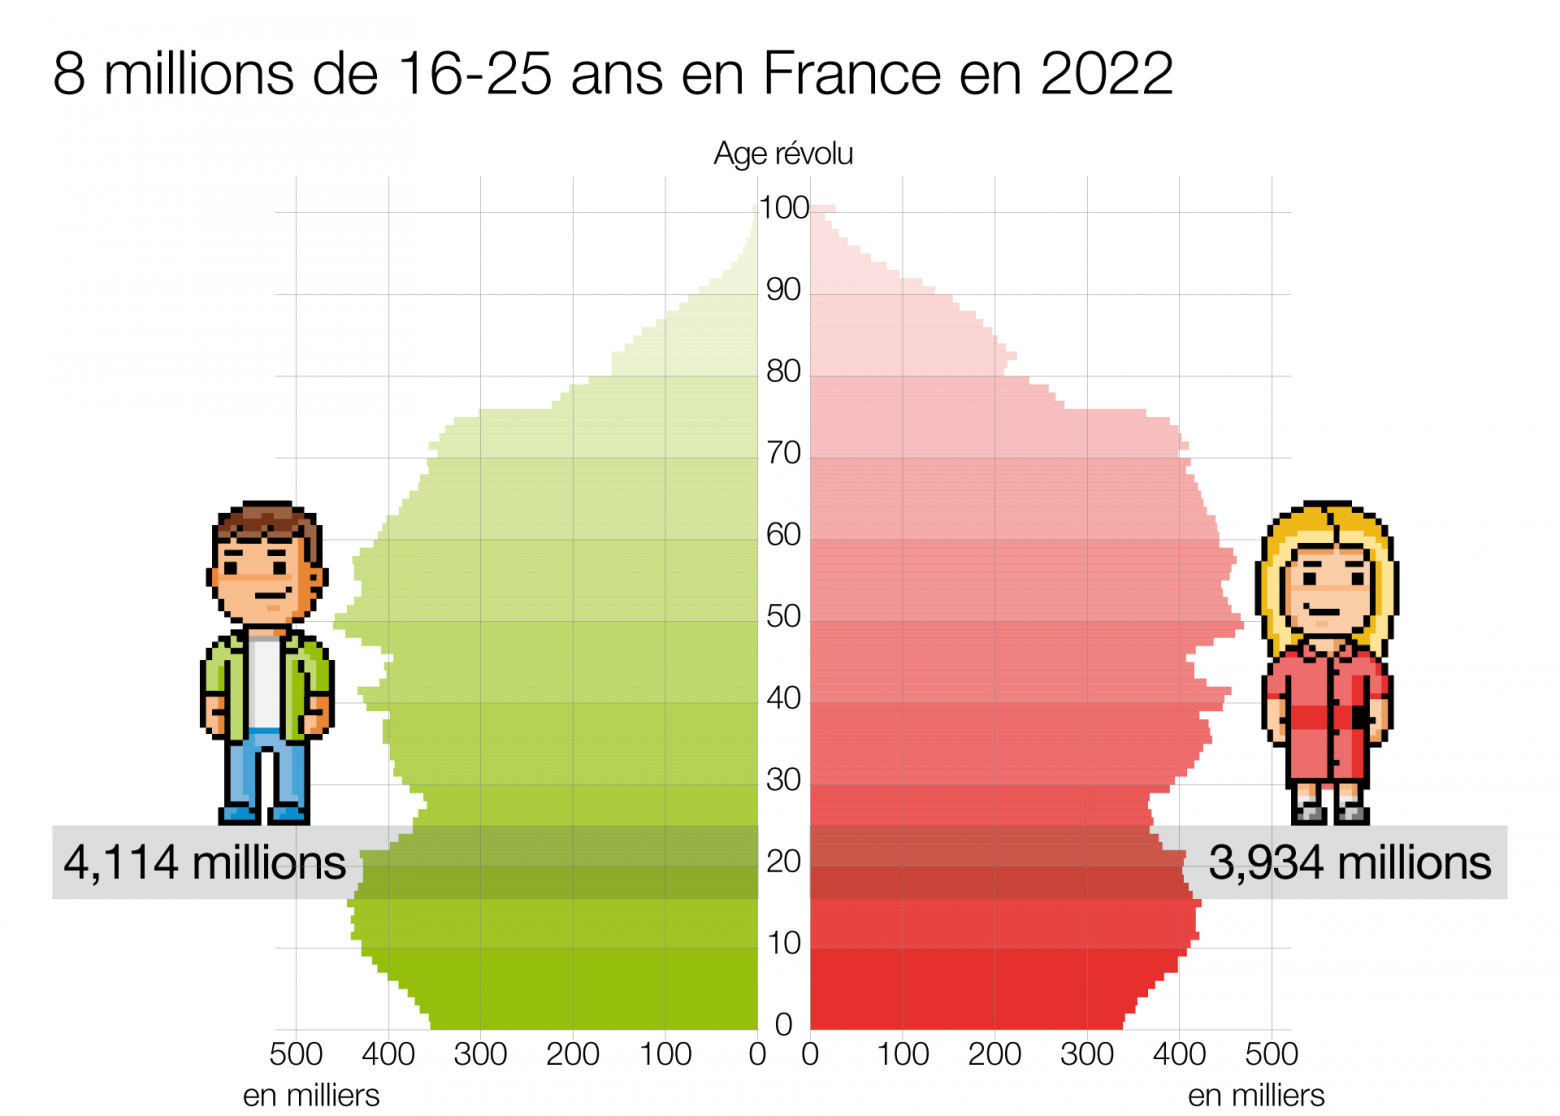 La France compte 8 millions de 16-25 ans en 2022
Graphique montrant la pyramide des âges en France en 2022 